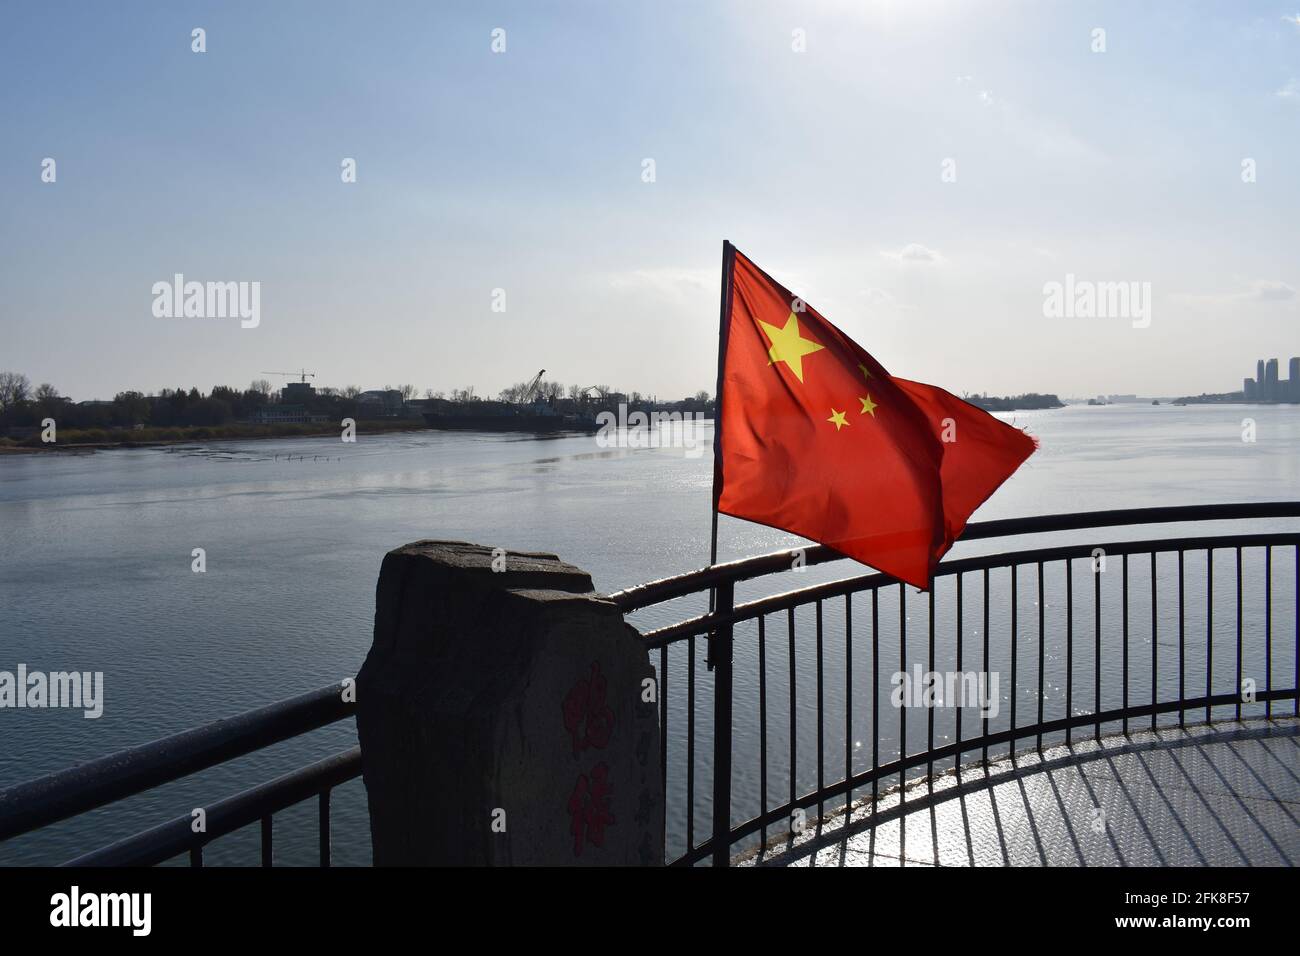 Chinese flag waving above river at China/North Korea border [Yalu River Broken Bridge, Dandong, China, Dec. 1st 2016] Stock Photo